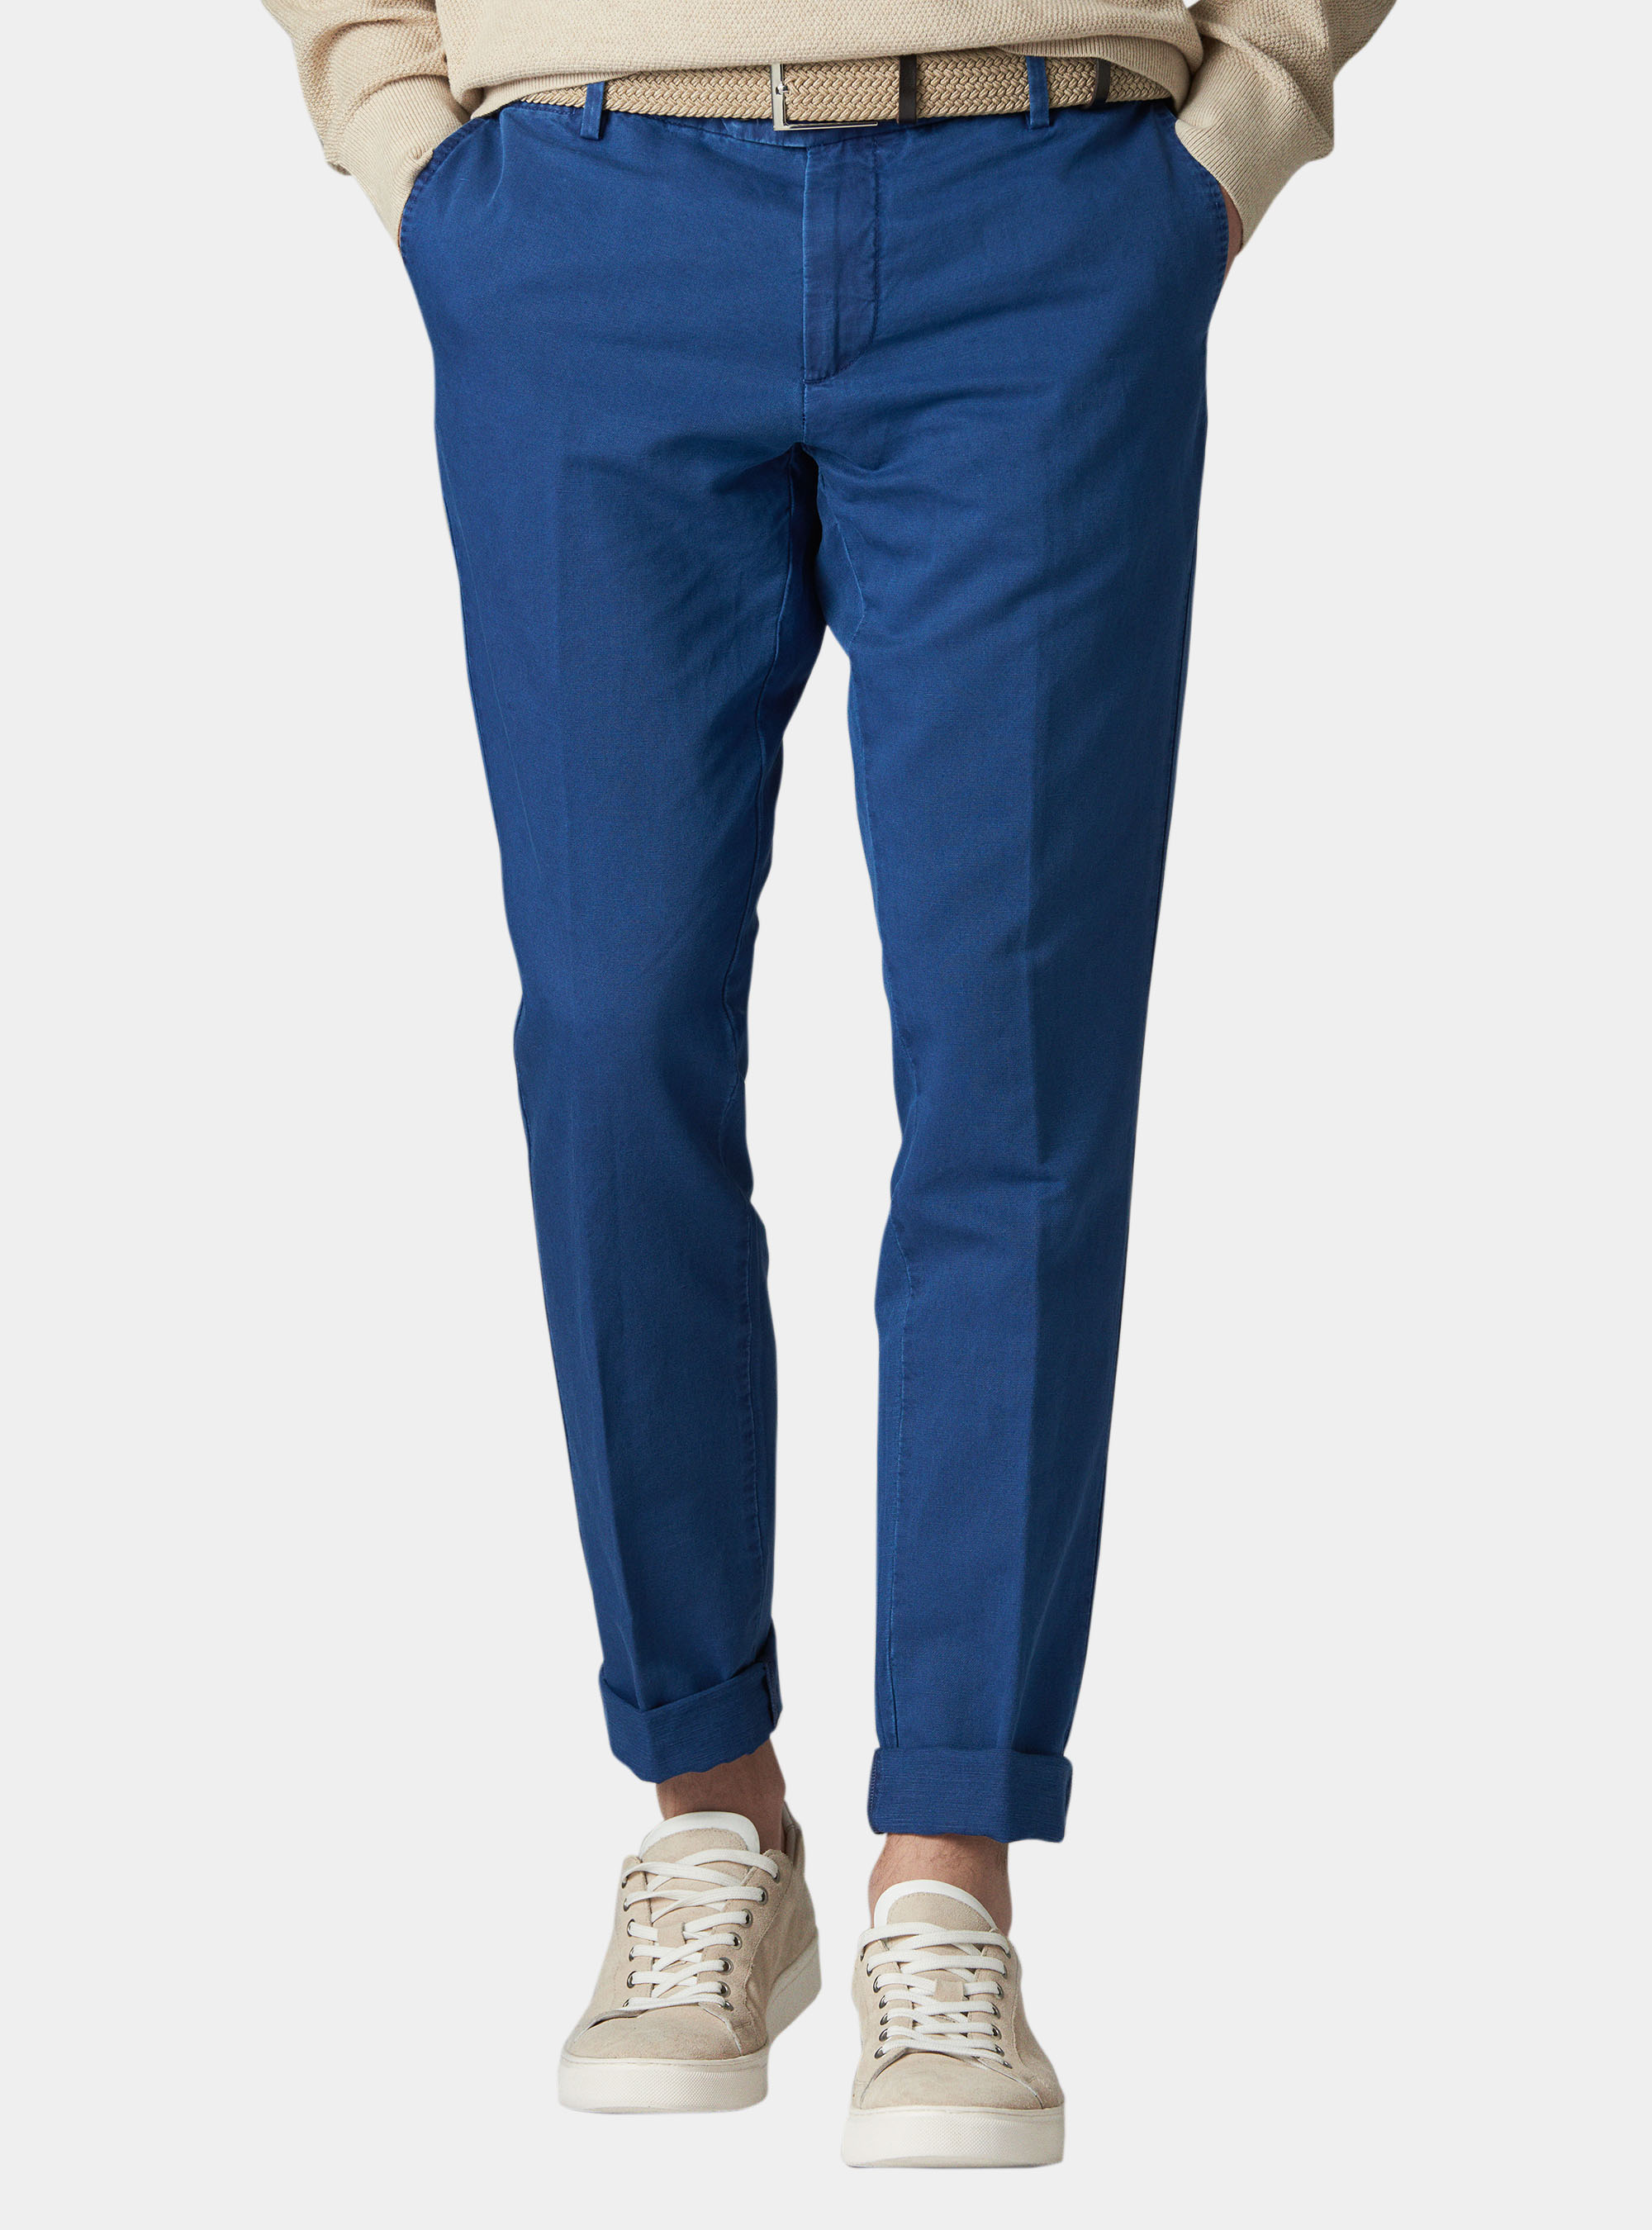 Inc da Uomo Londra Cotone Regular Fit Pantaloni chino con risvolto bhfo 4246 